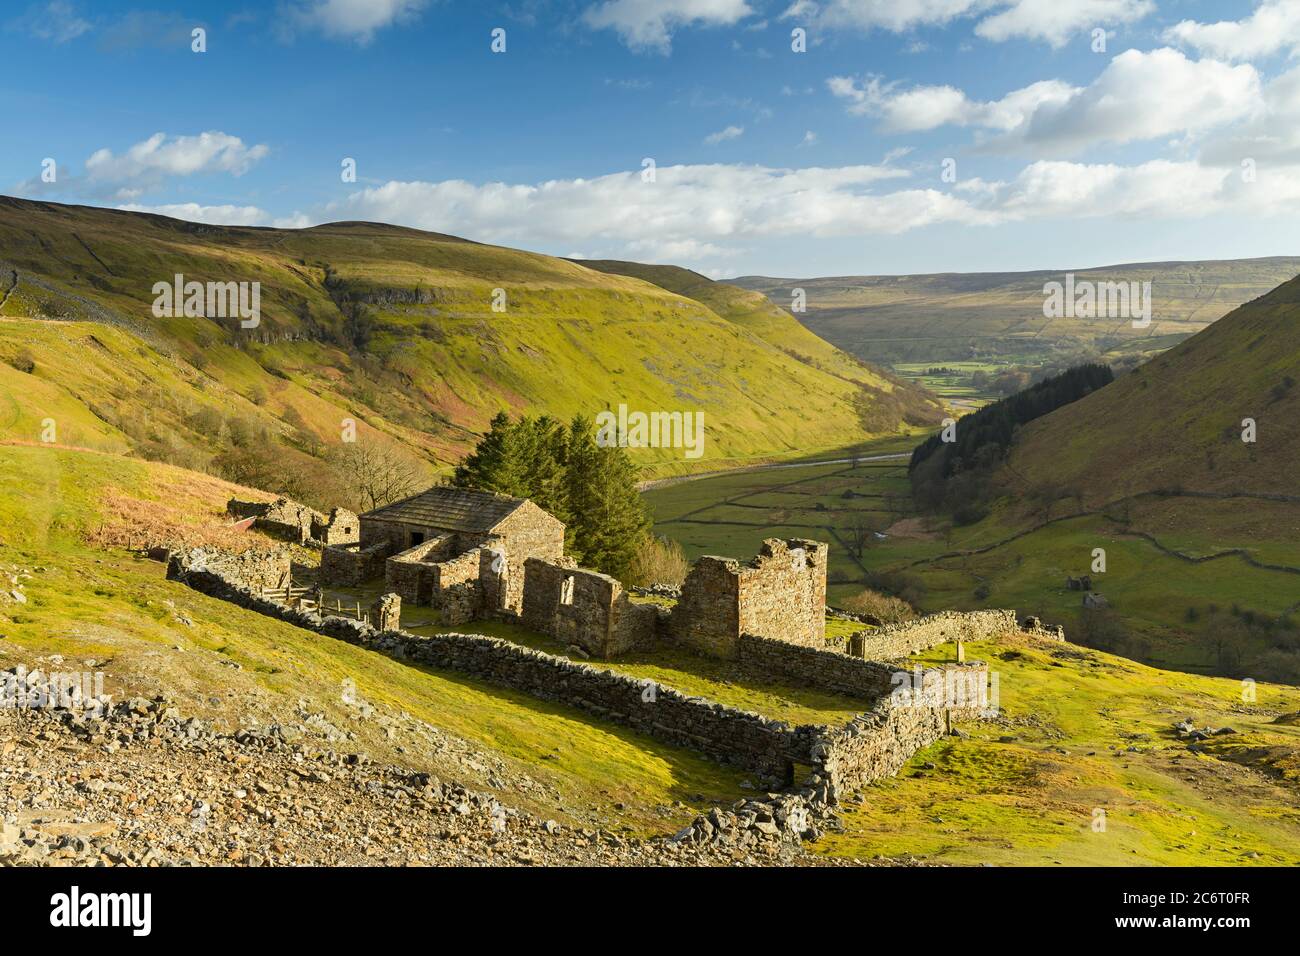 Crity Hall (ruines de la vieille ferme), haut sur une colline ensoleillée et isolée, surplombant les collines et la vallée rurales pittoresques du Yorkshire Dales (Swaledale) - Angleterre, Royaume-Uni. Banque D'Images